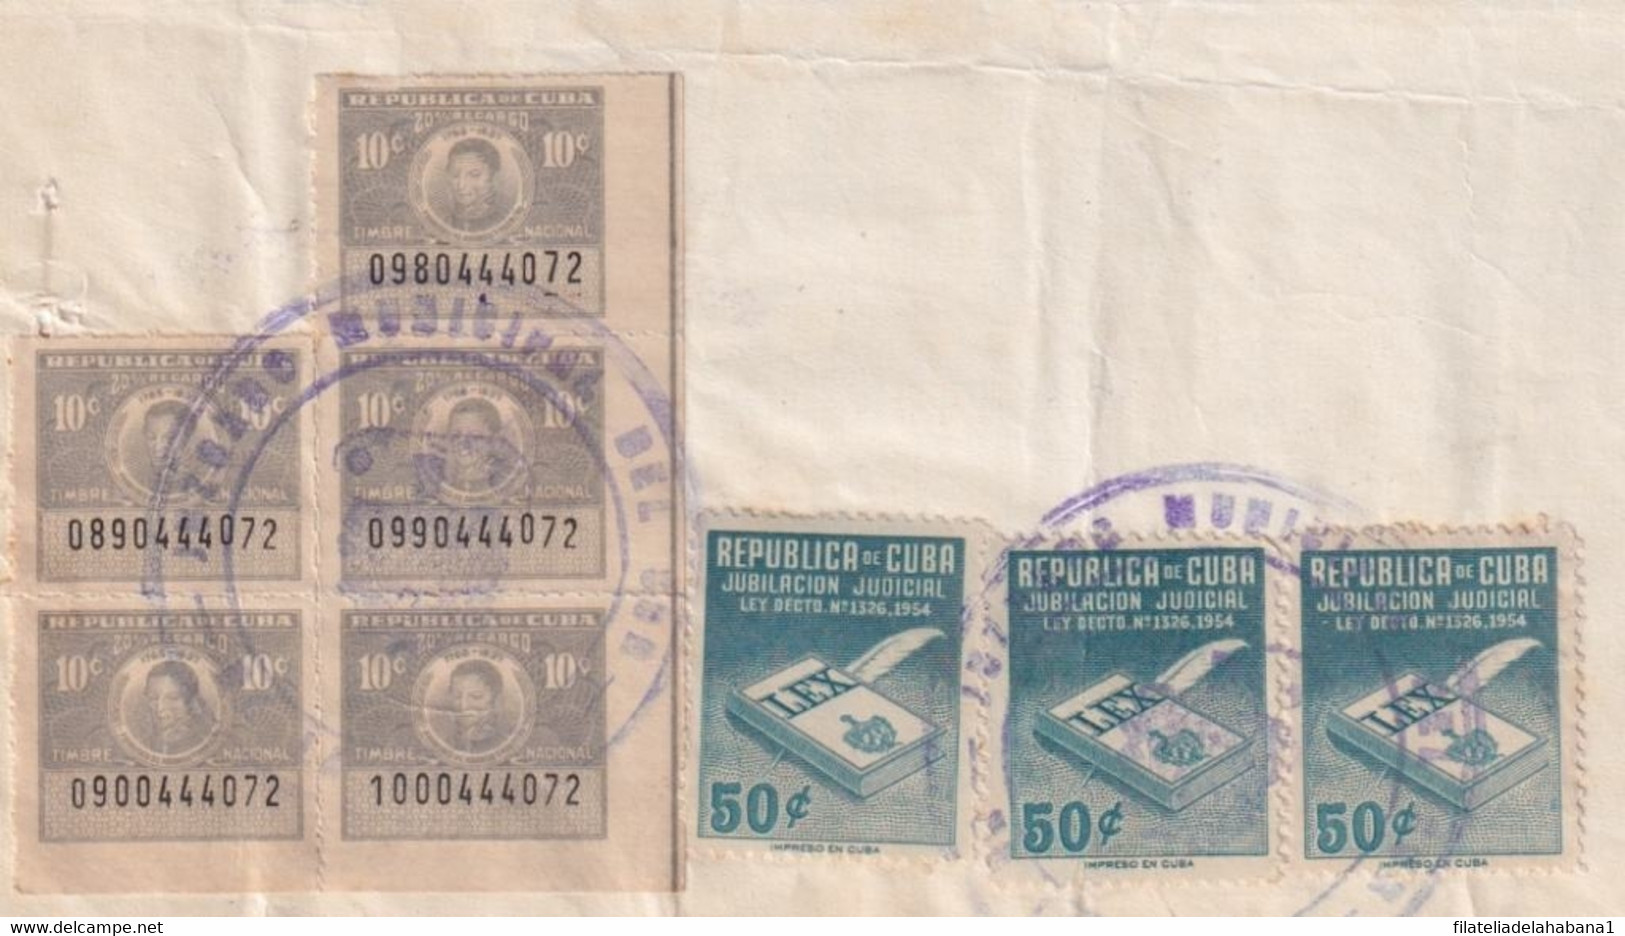 REP-405 CUBA (LG1904) REVENUE 1962 DOCS 10c, 1$ TIMBRE + JUBILACION NOTARIAL. - Impuestos